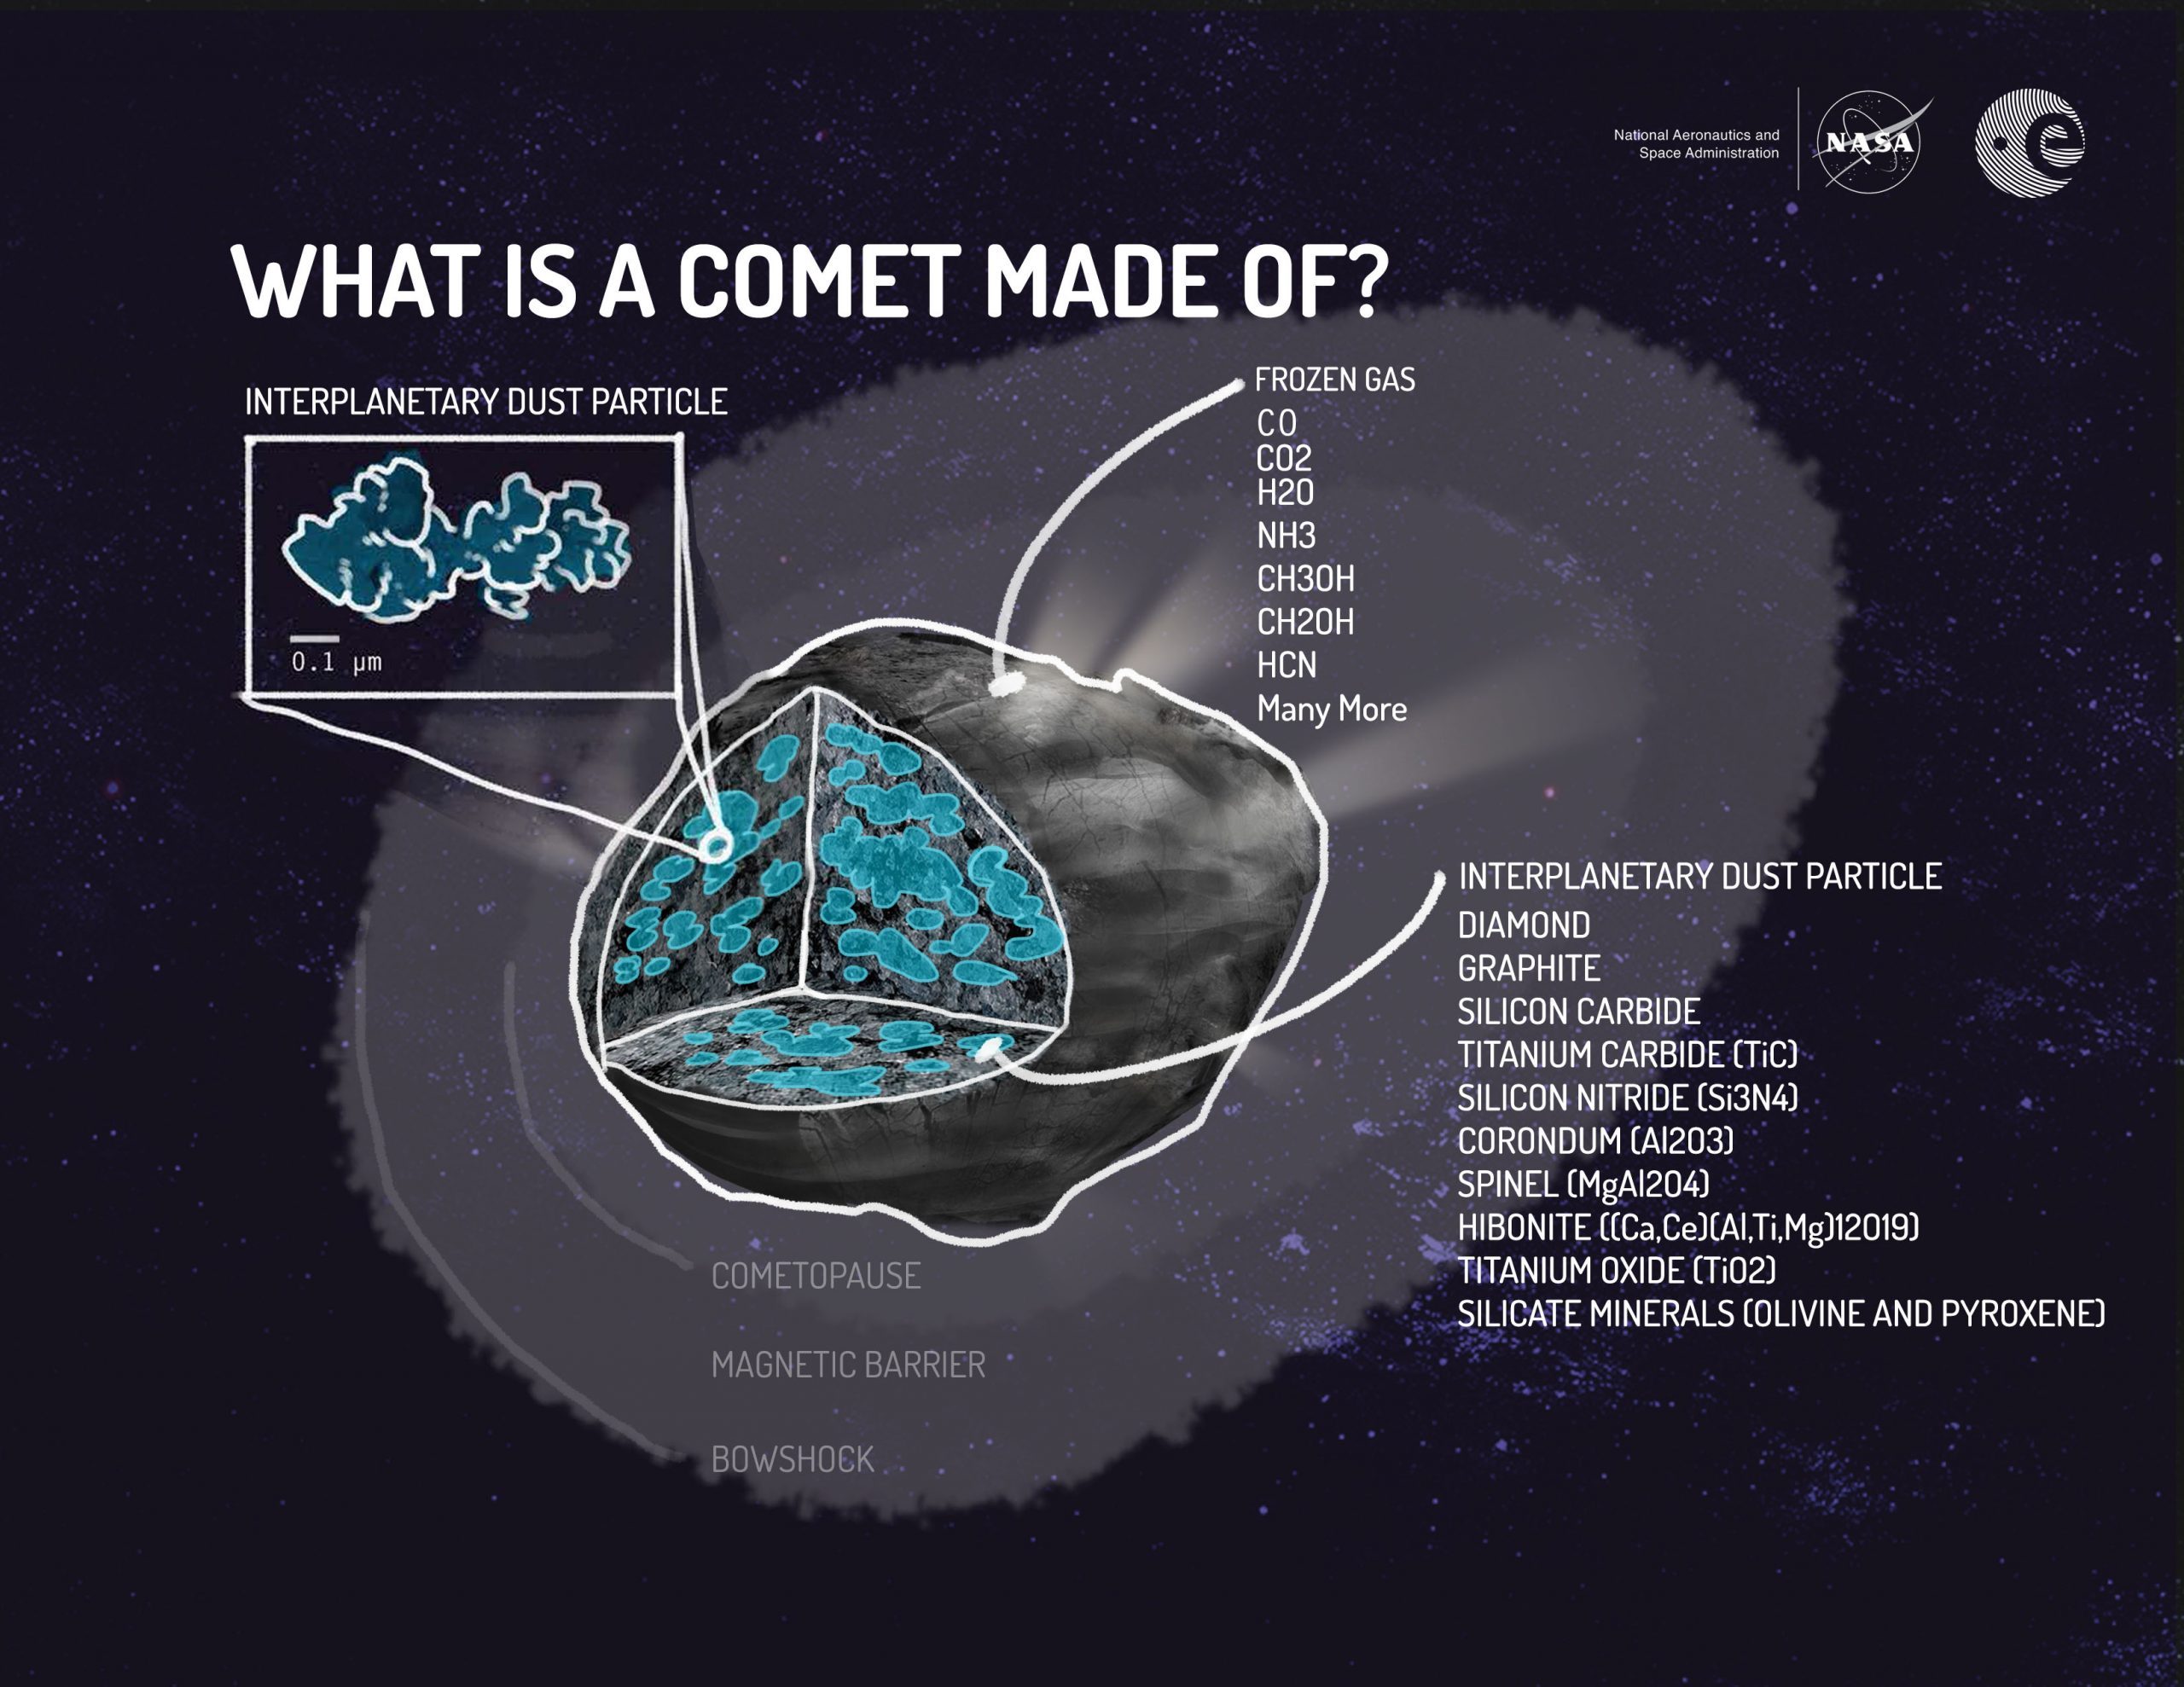 Représentation schématique de la composition de la comète